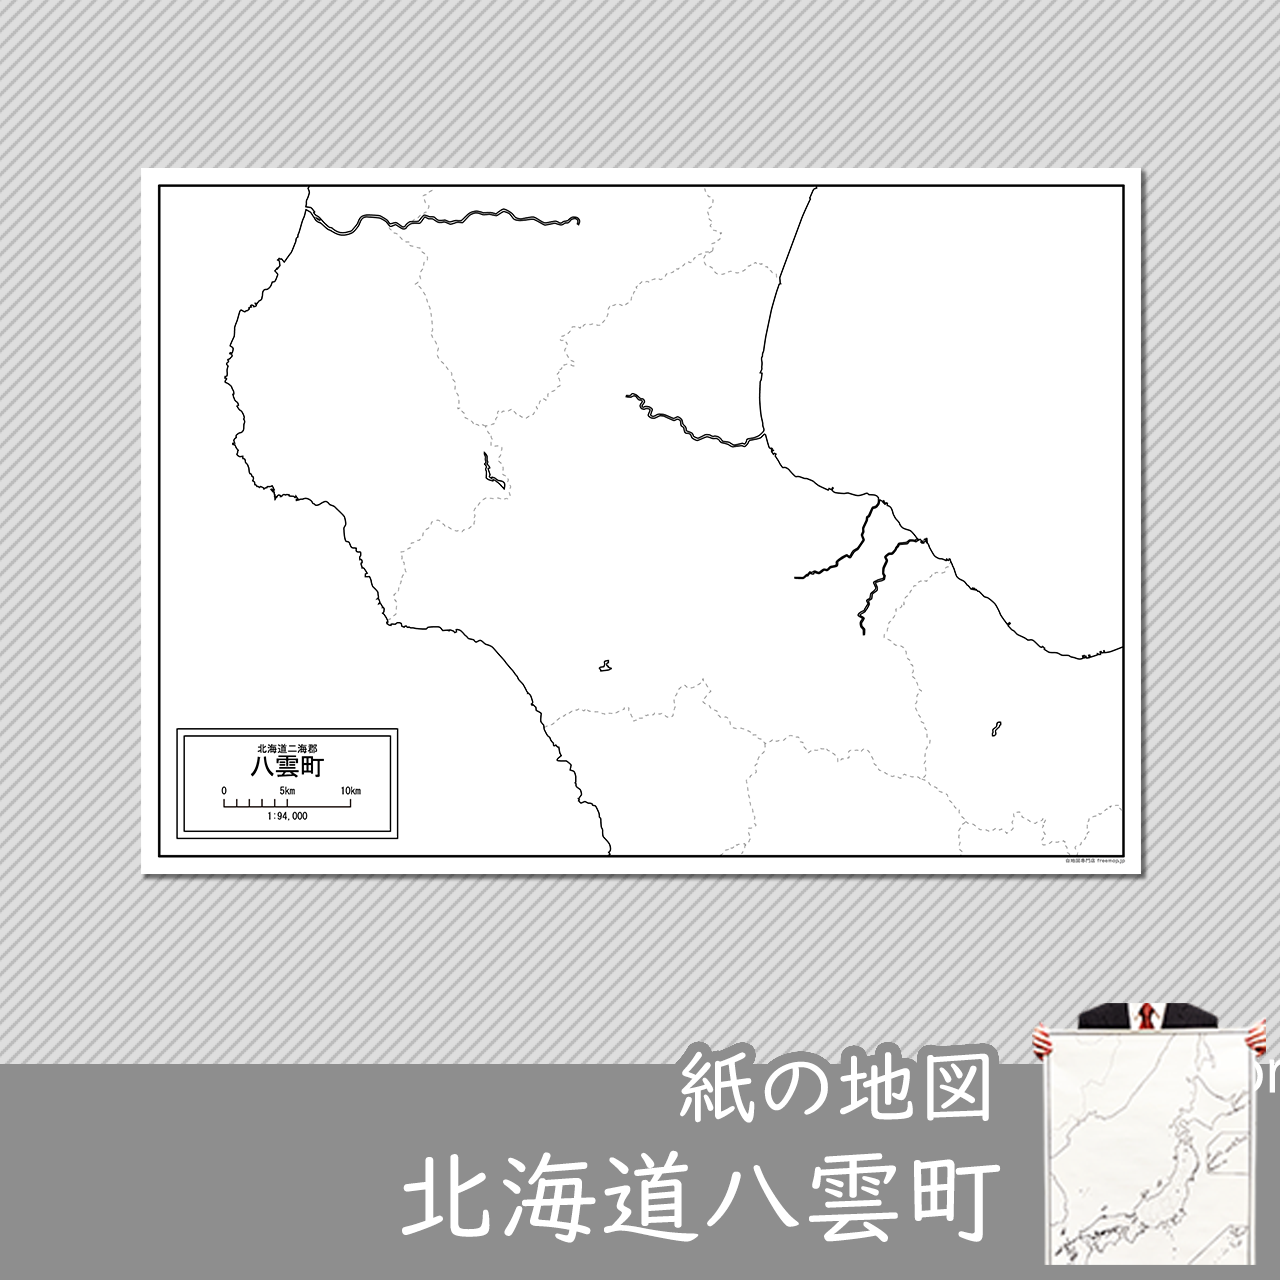 八雲町の紙の白地図のサムネイル